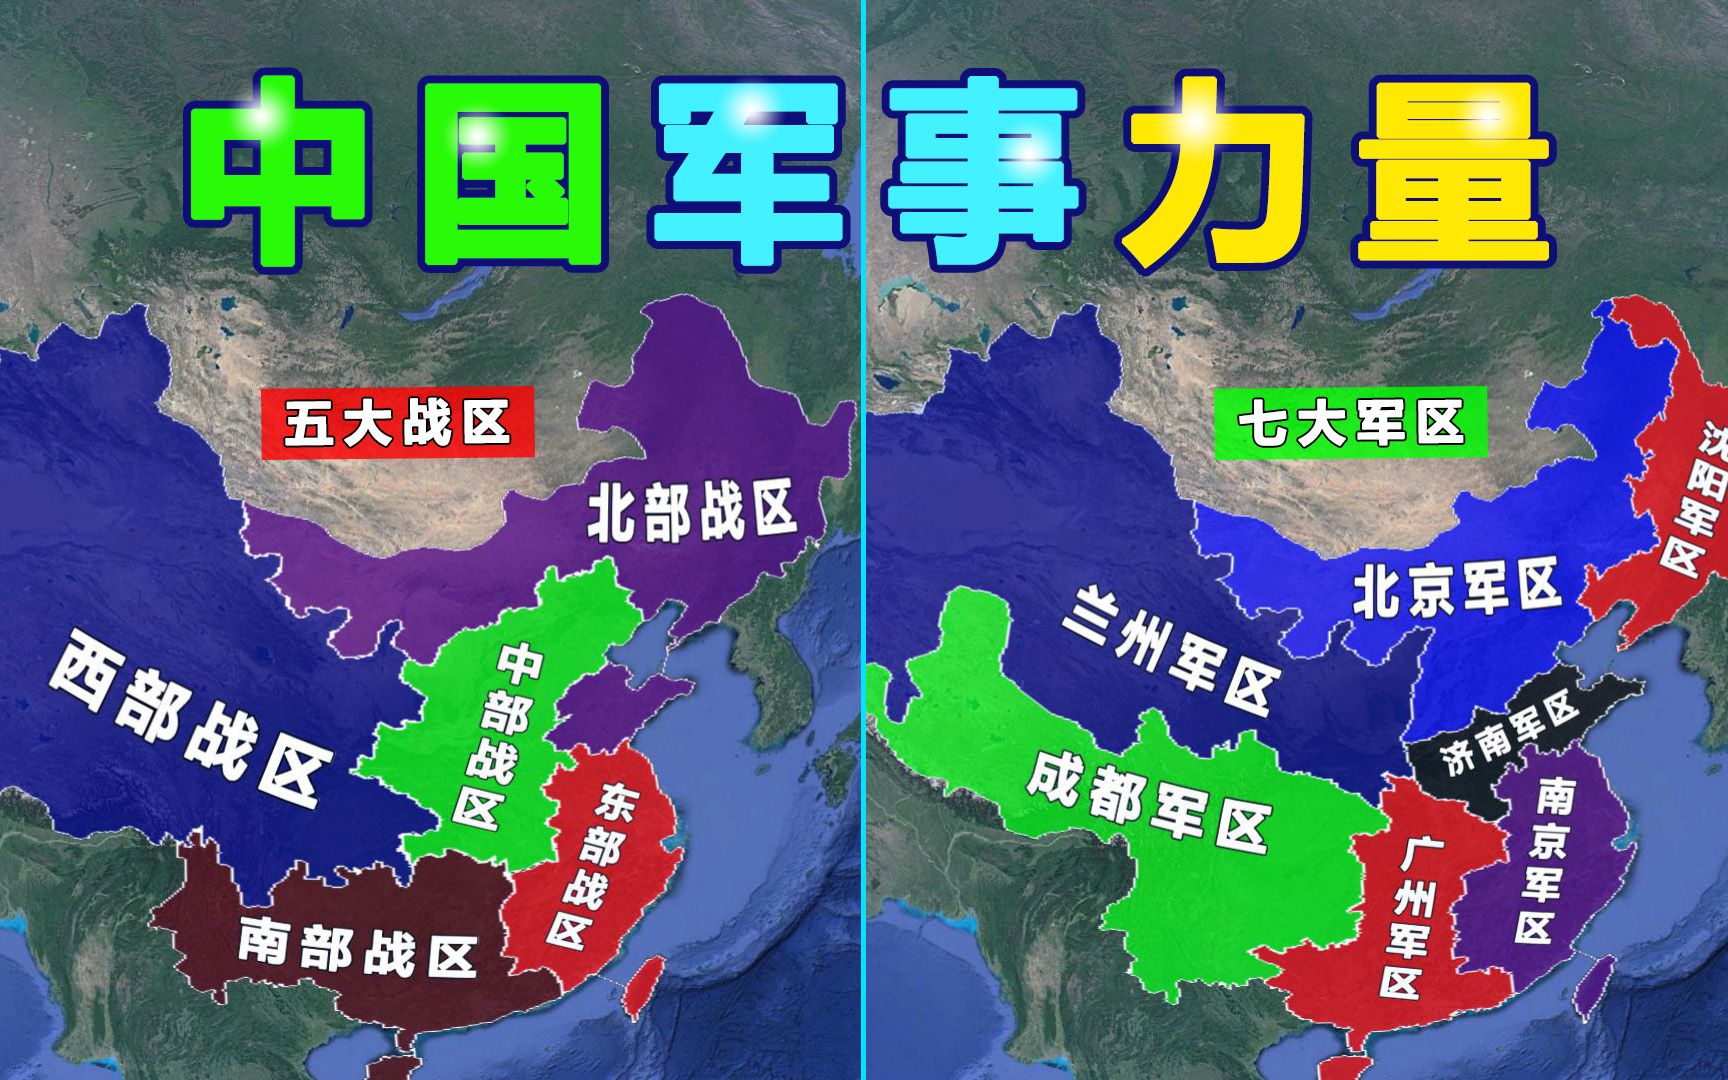 中国军事力量以及七大军区和五大战区划分